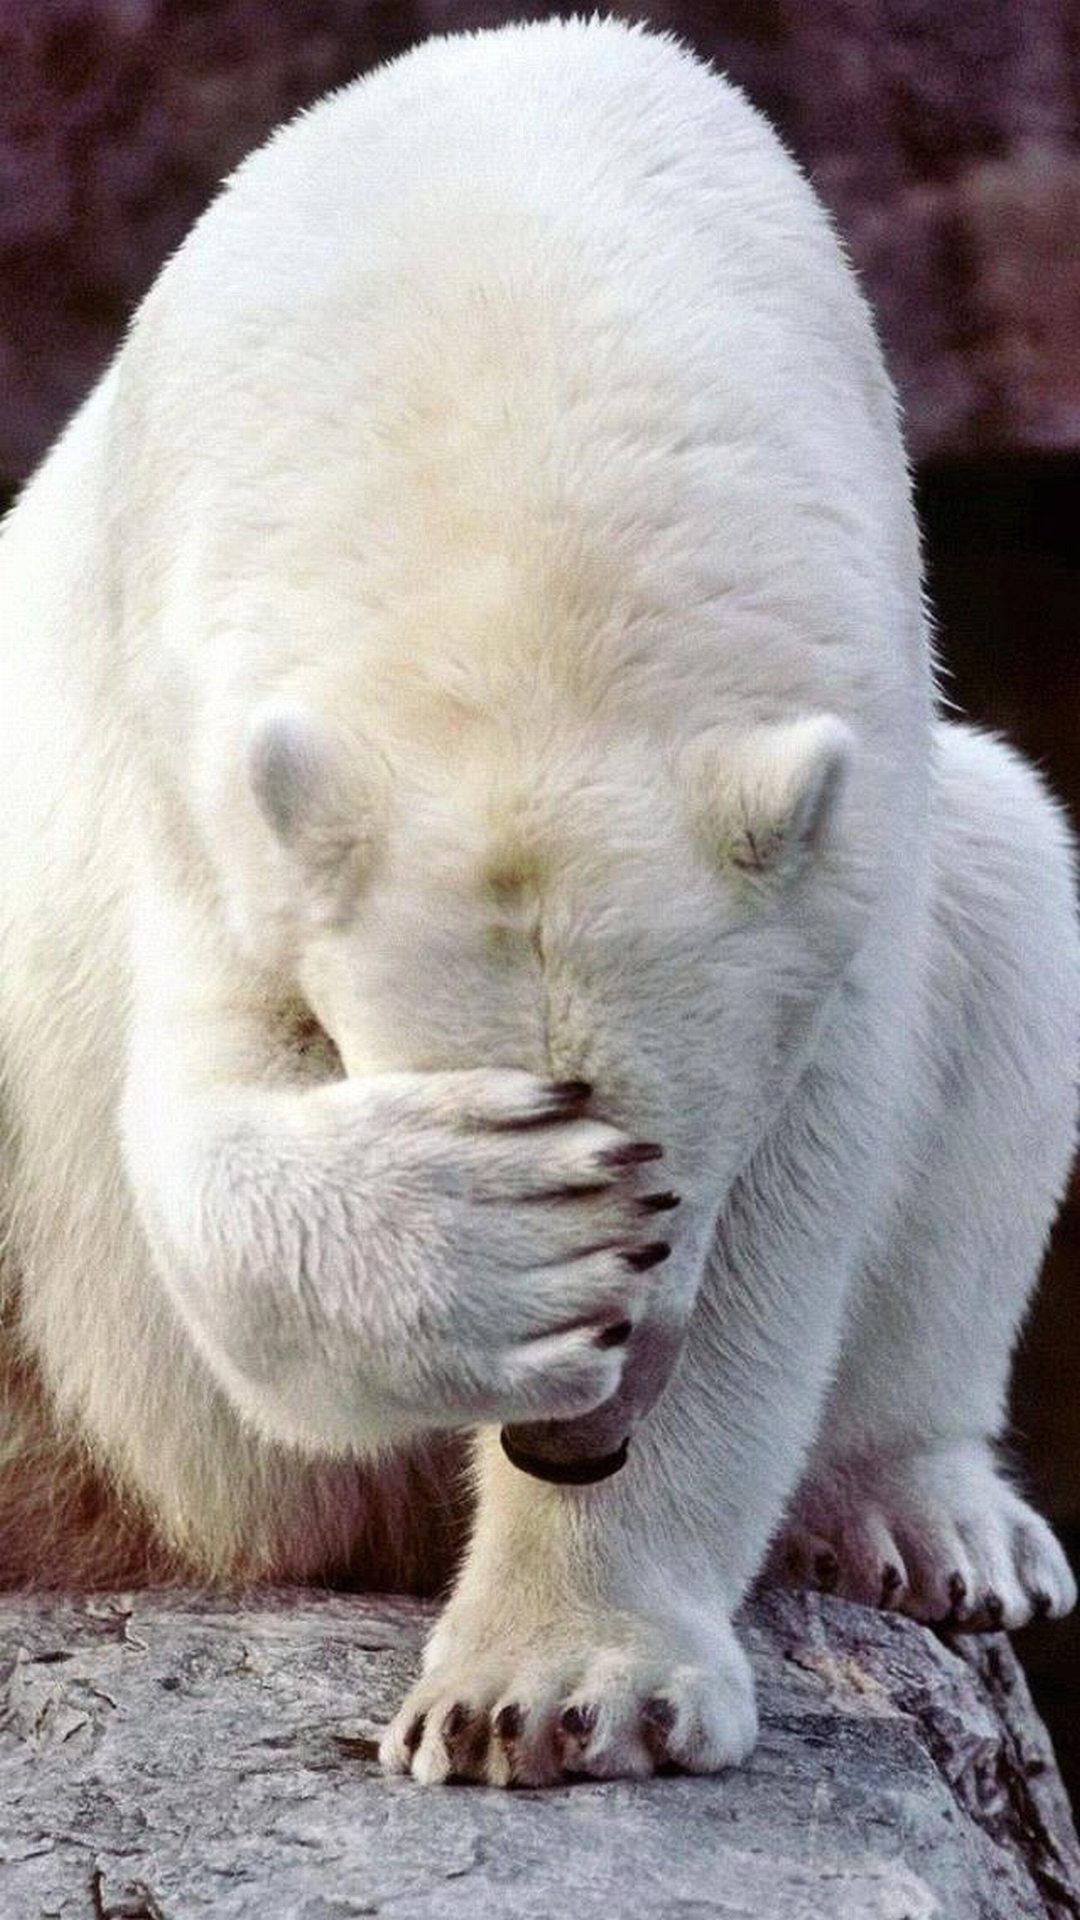 داغ ترین عکس خام خرس قطبی در حال زدن بر سرش برای ساخت میم